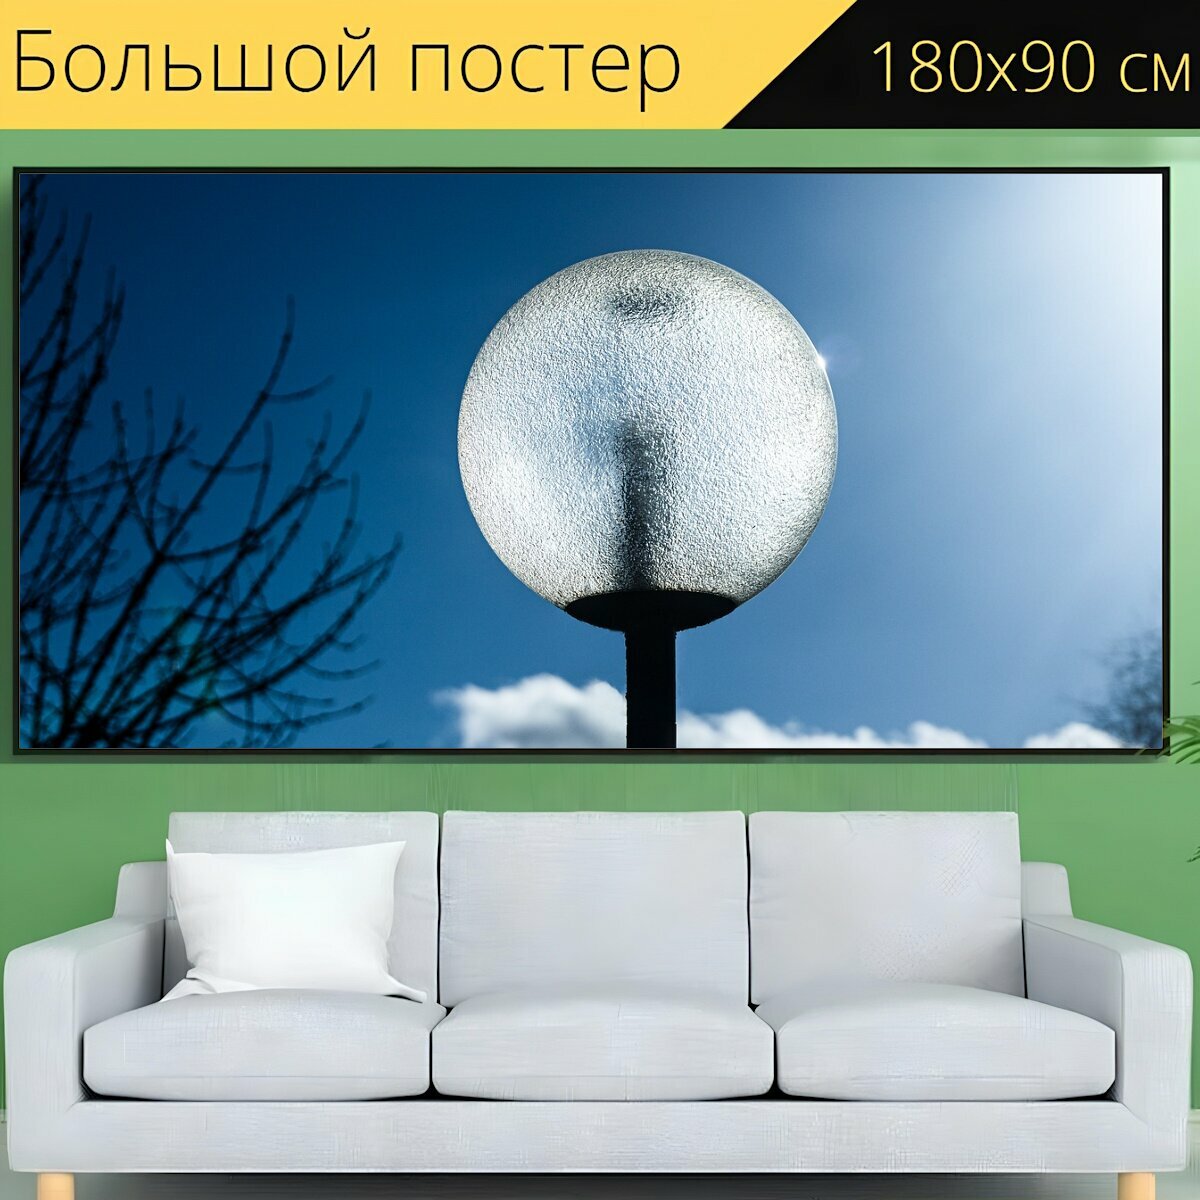 Большой постер "Напольная лампа, свет, яркий" 180 x 90 см. для интерьера